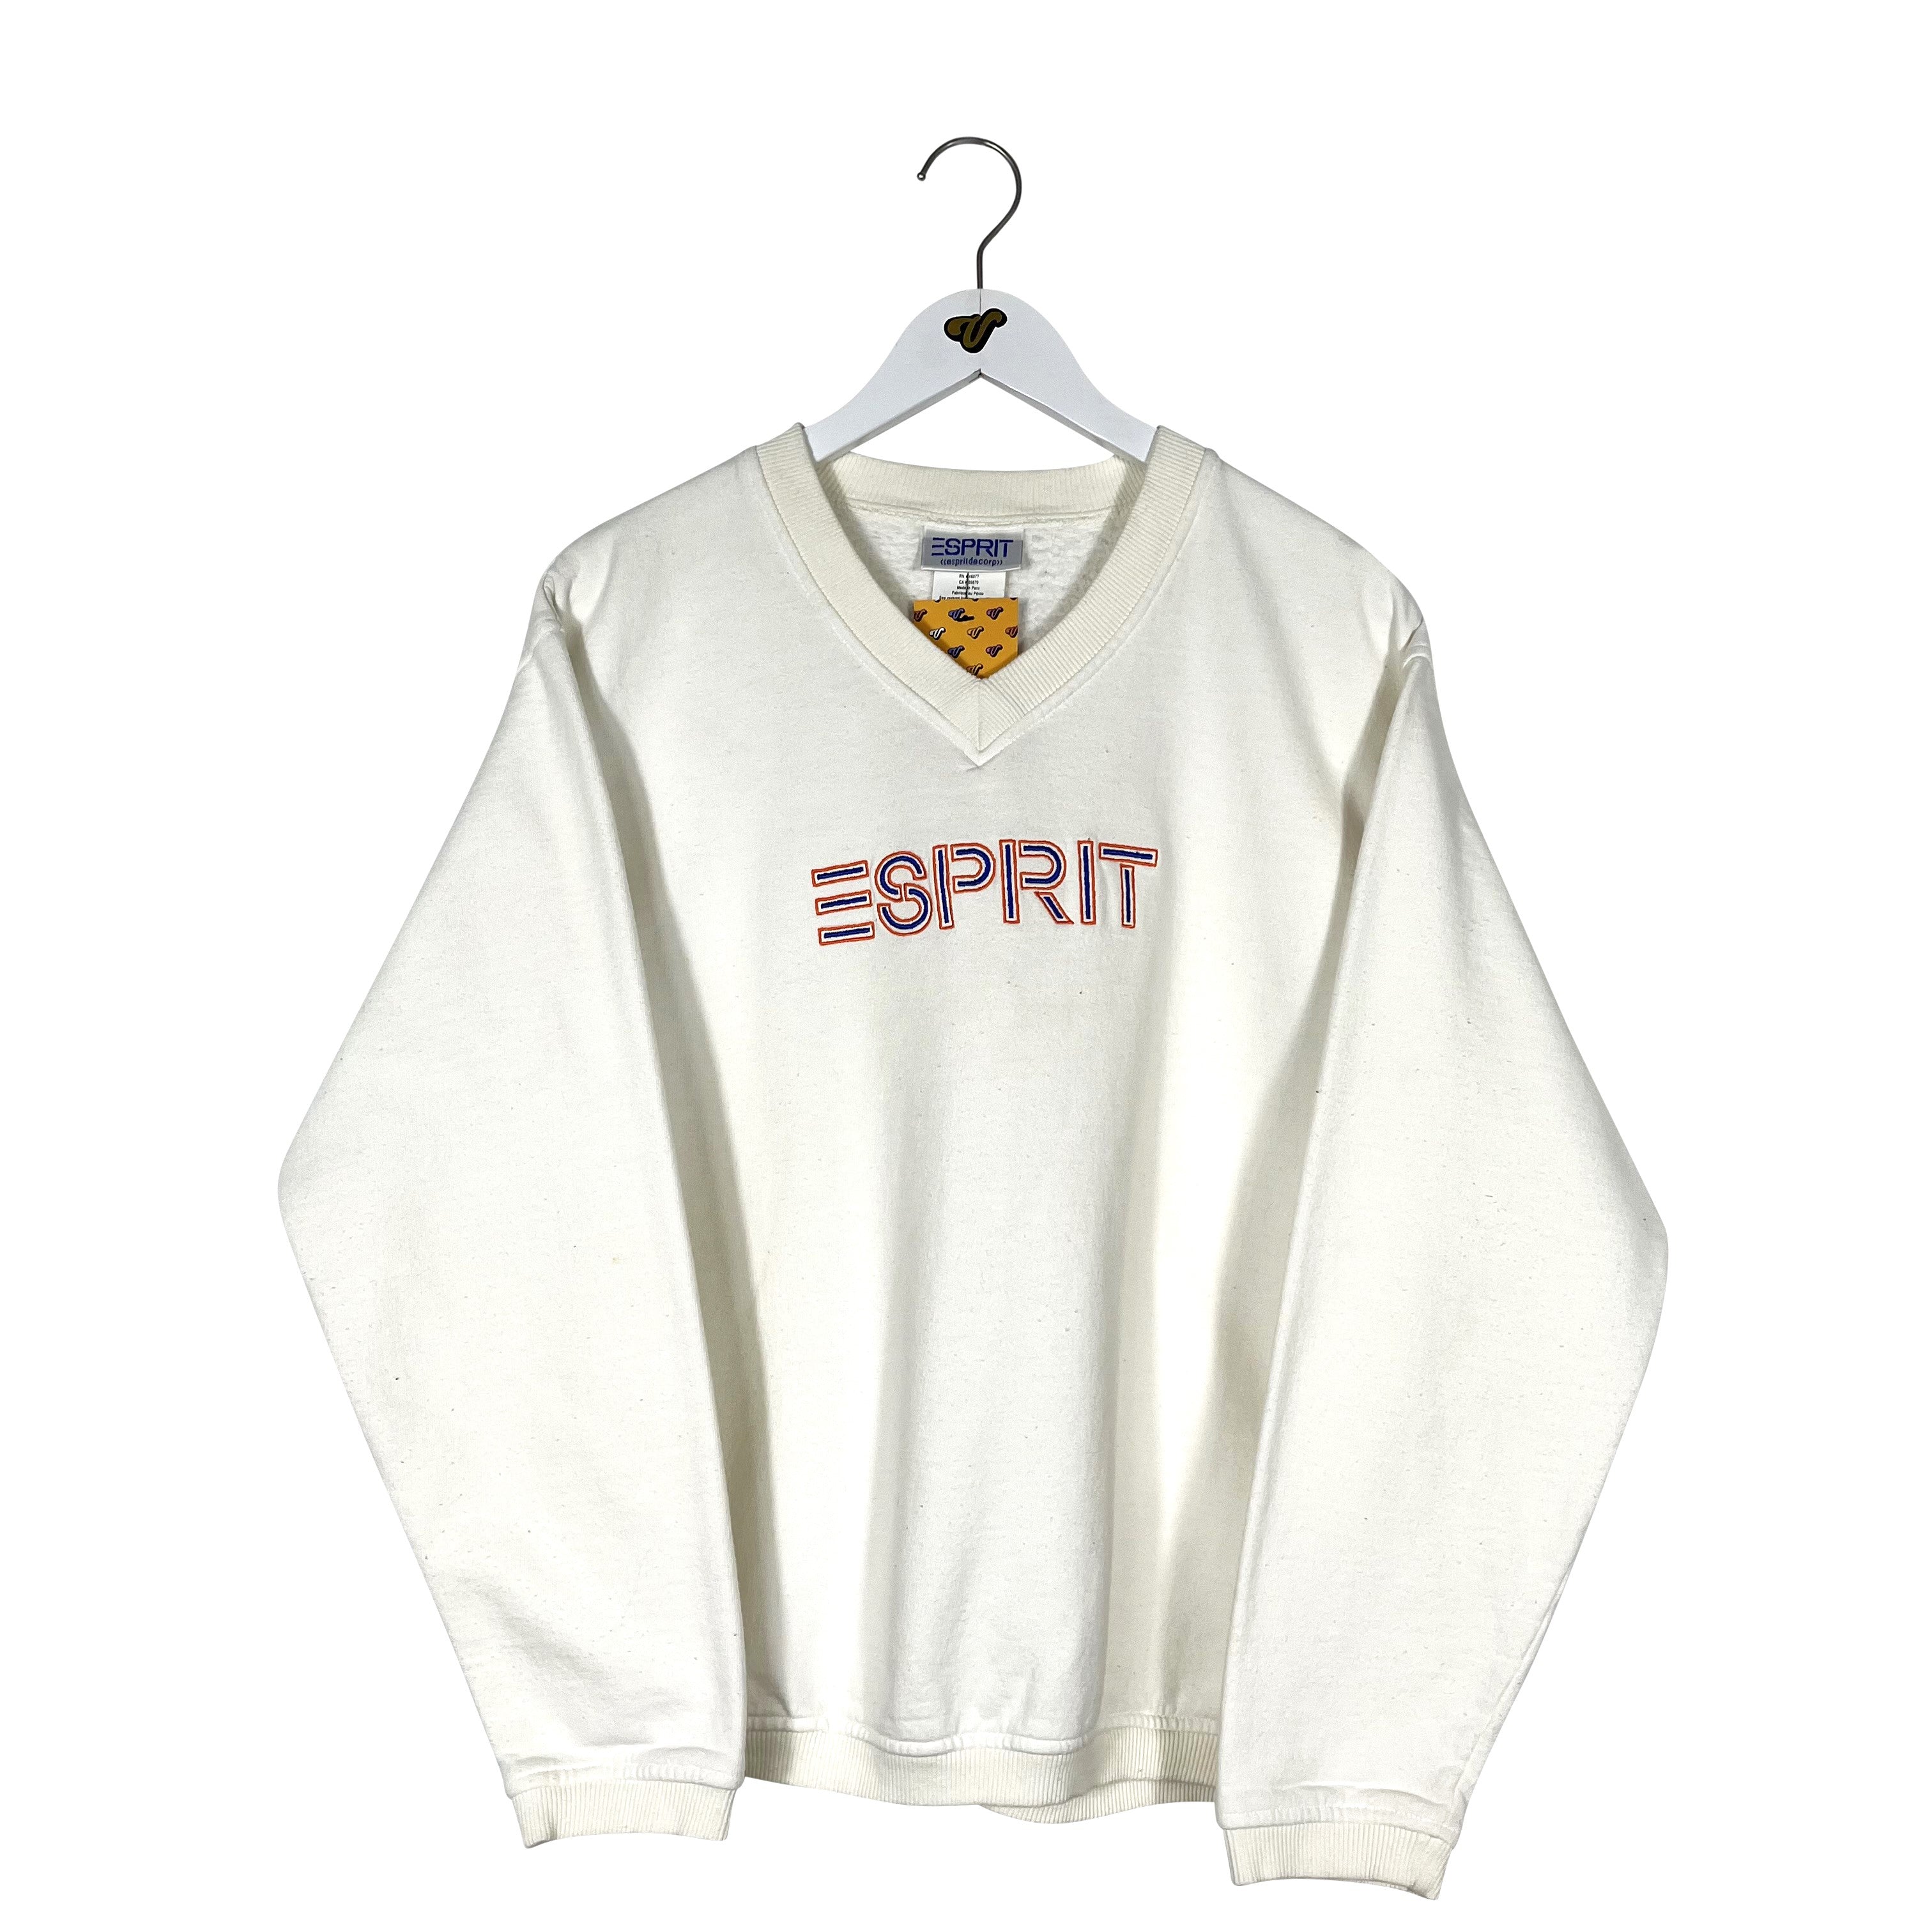 Vintage Esprit Crewneck Sweatshirt - Men's Small